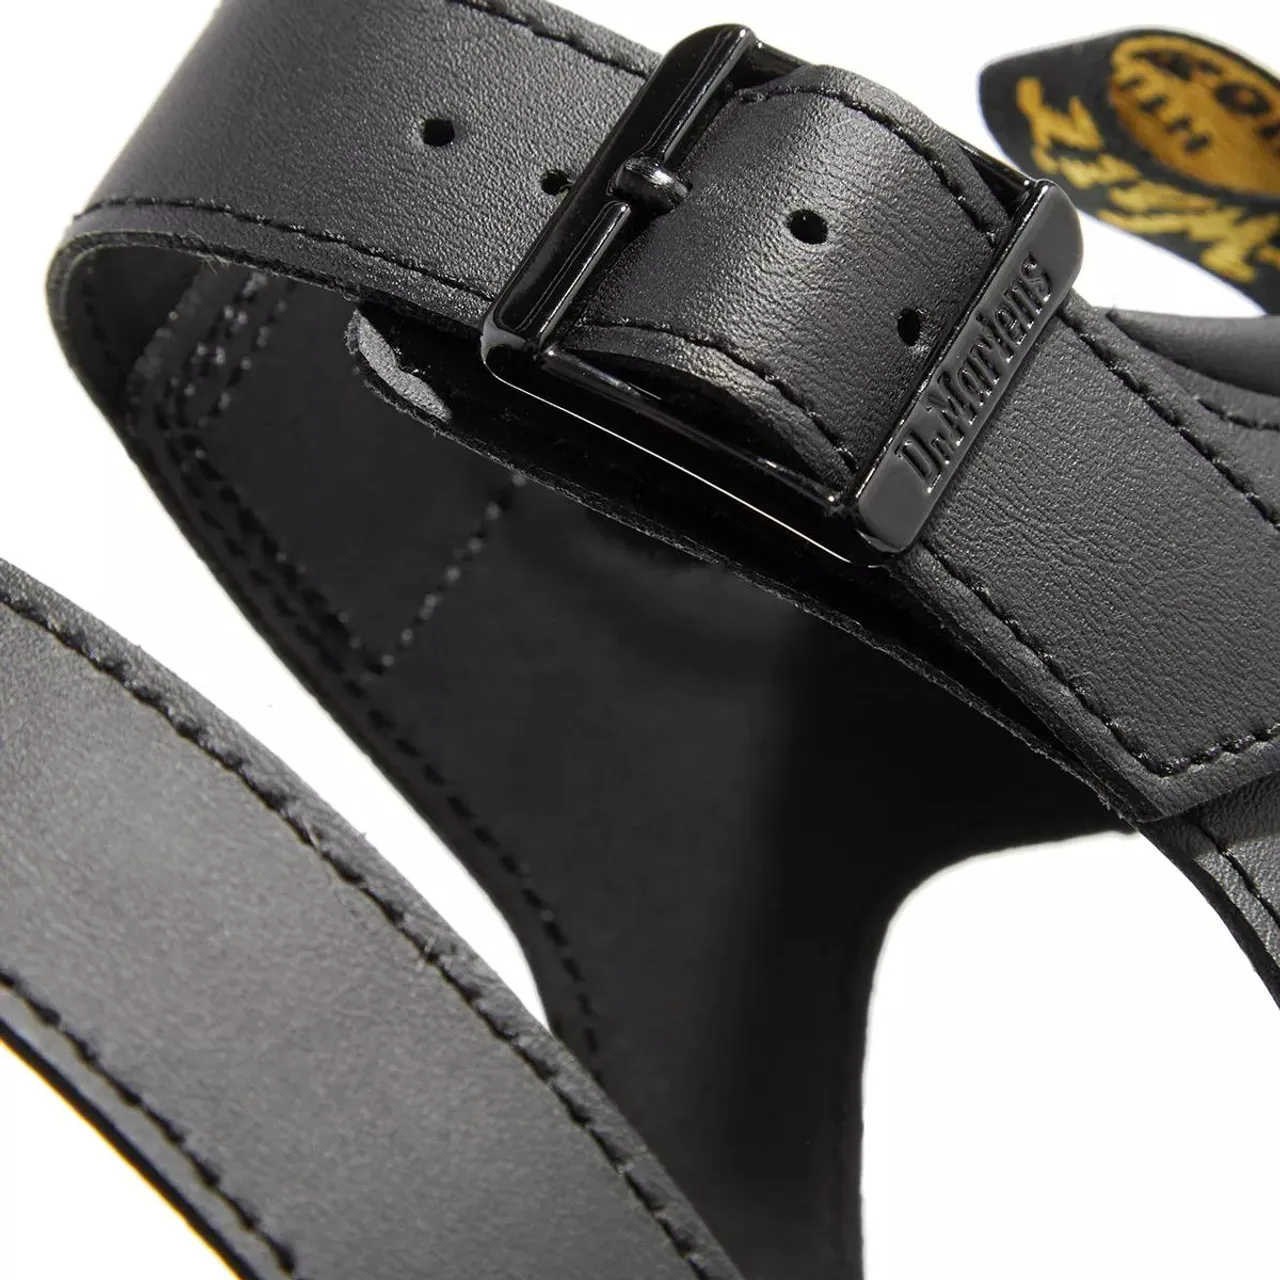 Dr. Martens Sandals - Blaire Quad - black - Sandals for ladies